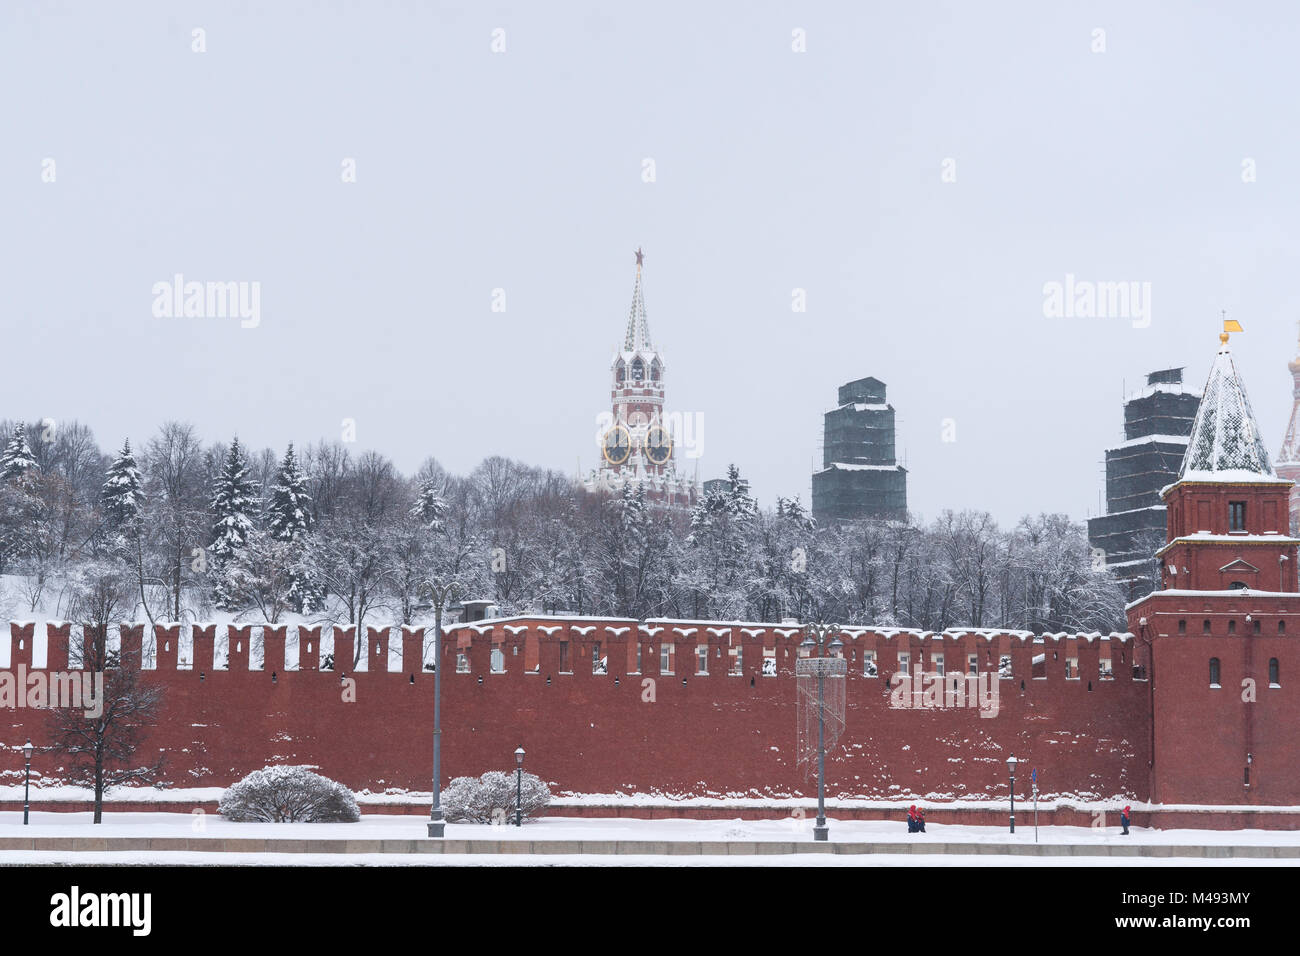 Kremlin de Moscú, la pared de ladrillo de color rojo, Spassky, Salvador, torre con campanas. Dos torres bajo cubierta de protección para trabajos de renovación. Día de invierno frío Foto de stock